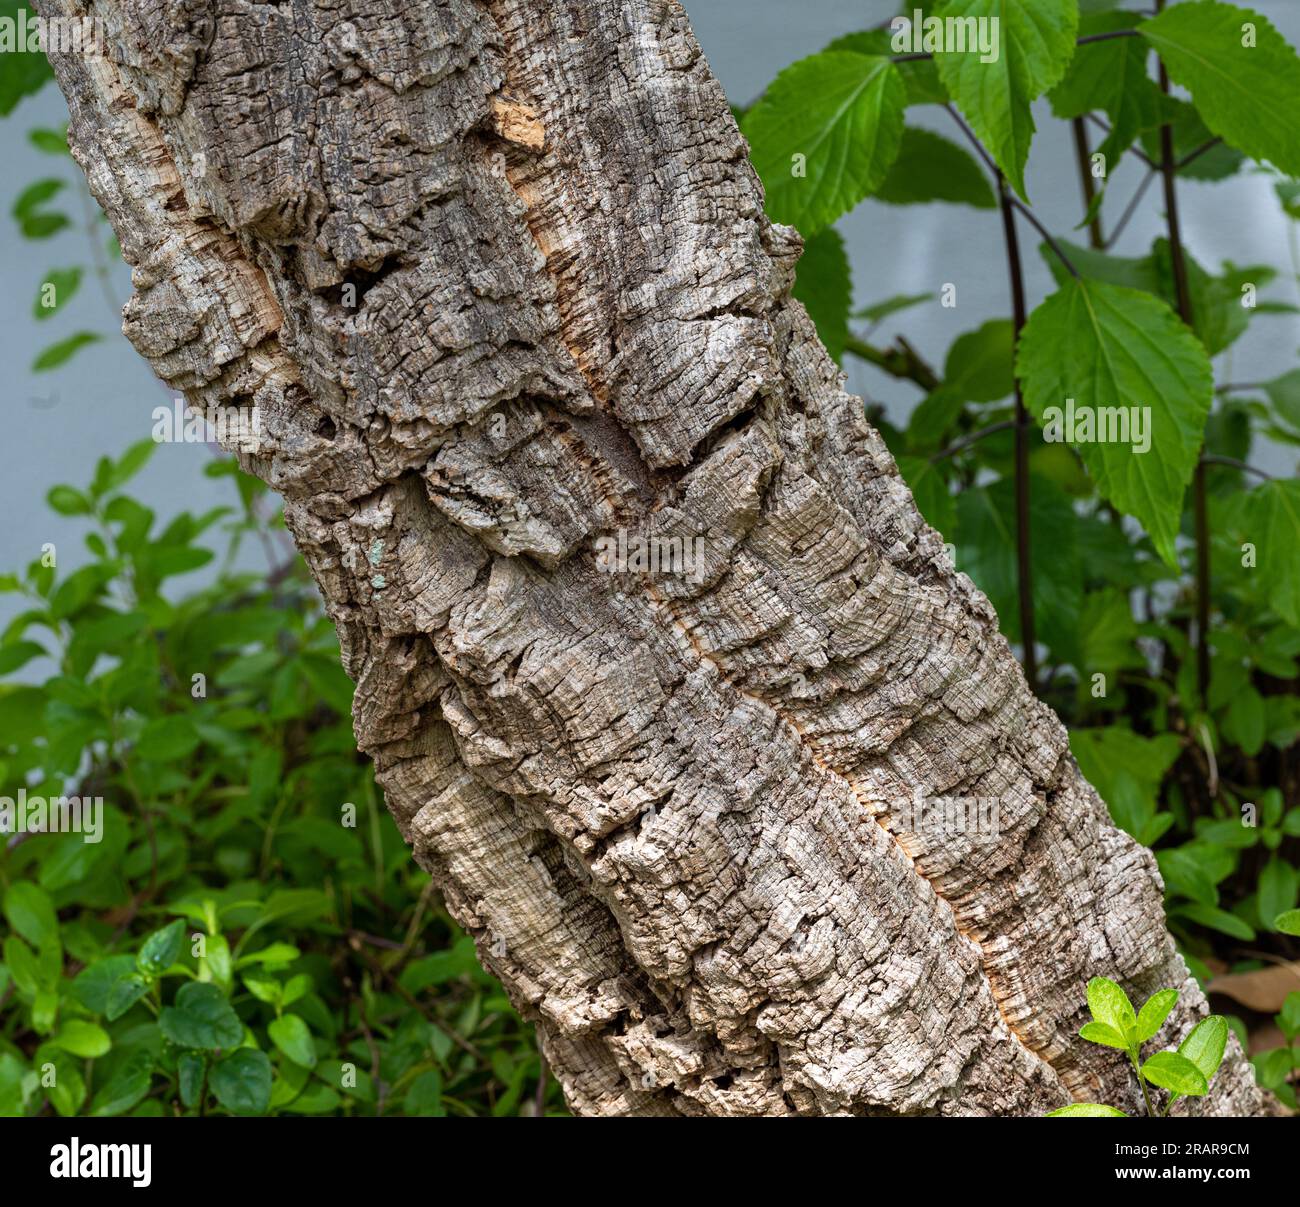 Horizontal close up photo of bark from a cork oak tree. Stock Photo